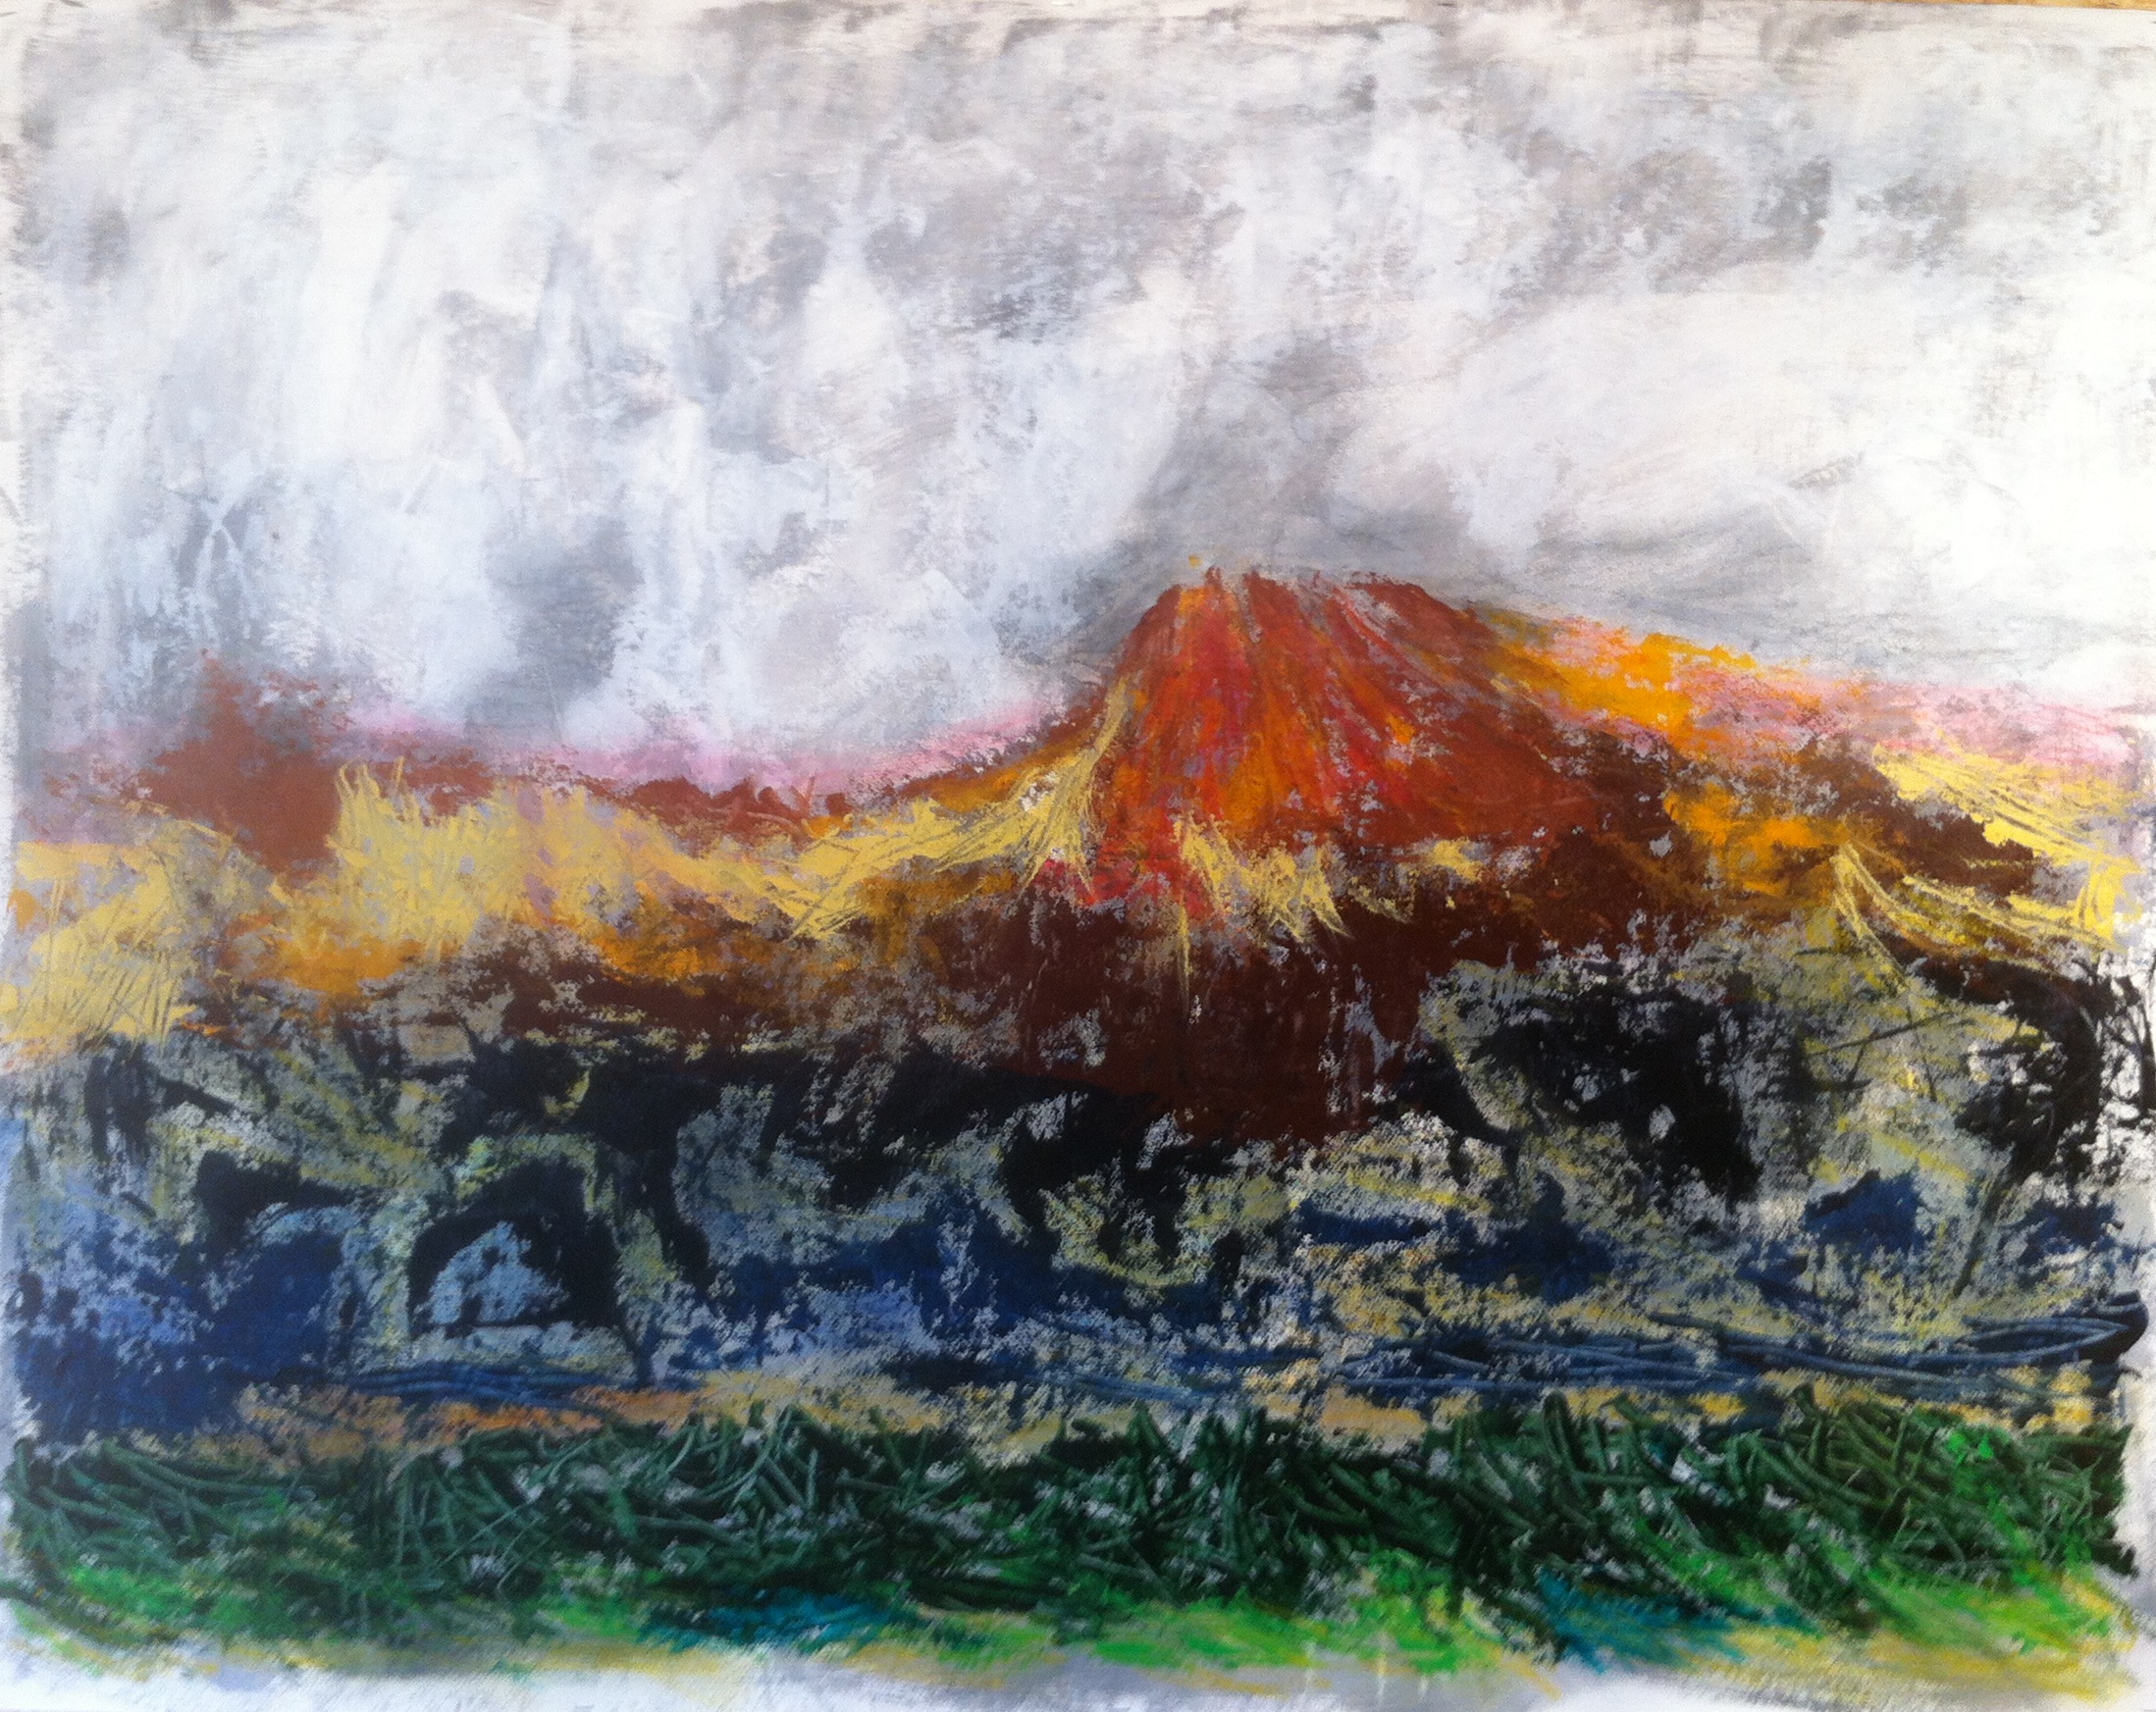 N°1501 - Olympe - Acrylique et pastel sur papier - 100 x 130 cm - 12 juillet 2014